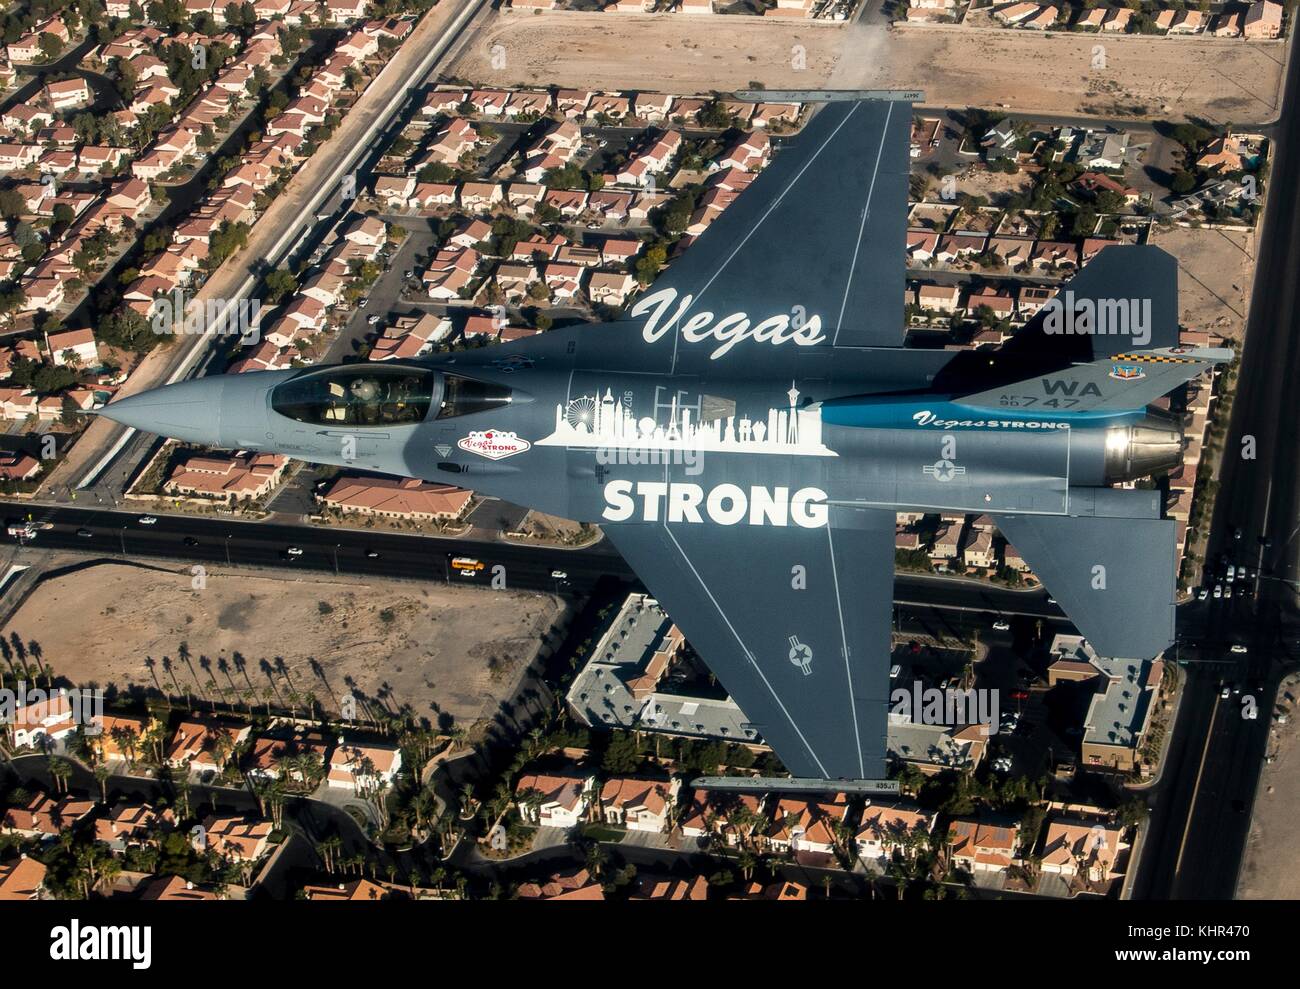 Un u.s. air force F-16 Fighting Falcon fighter survole un quartier de las vegas, le 9 novembre 2017 à Las Vegas, Nevada. l'avion est peint vegas strong pour rendre hommage aux victimes de la route 91 Fête des vendanges le tir. (Photo christopher boitz par planetpix) Banque D'Images